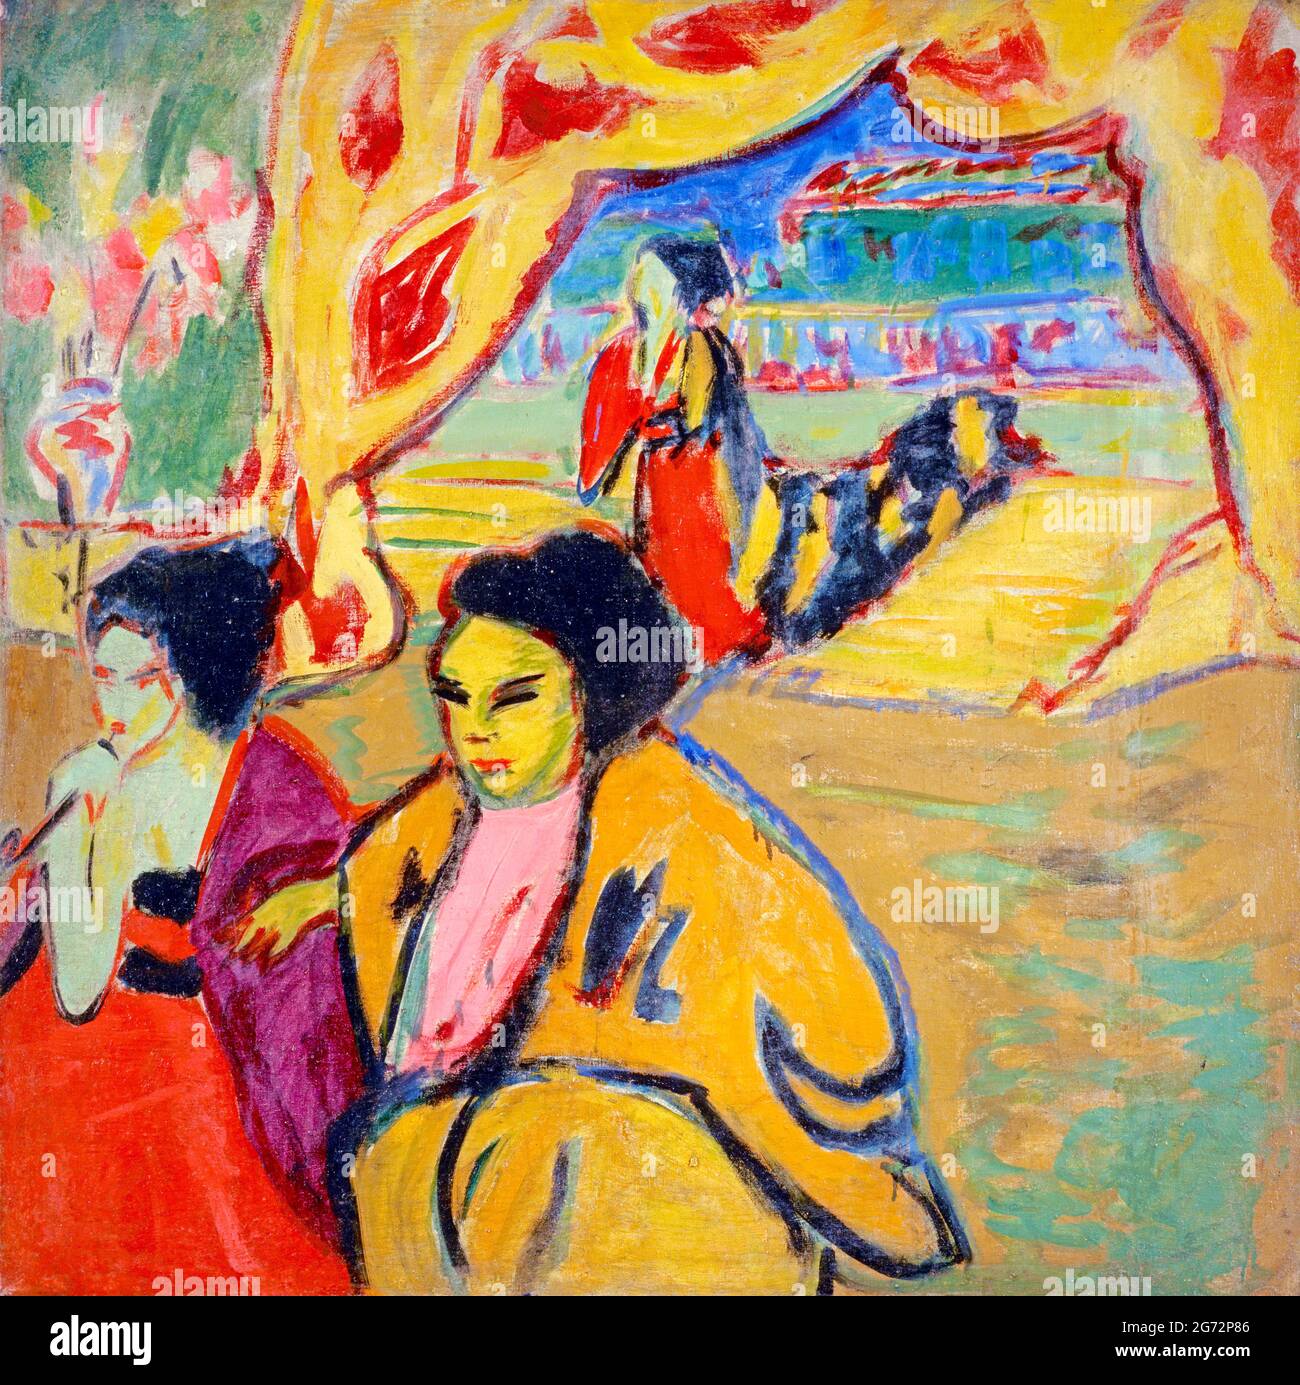 Théâtre Japanisches (théâtre japonais) par Ernst Ludwig Kirchner (1880-1938), huile sur toile, 1909 Banque D'Images